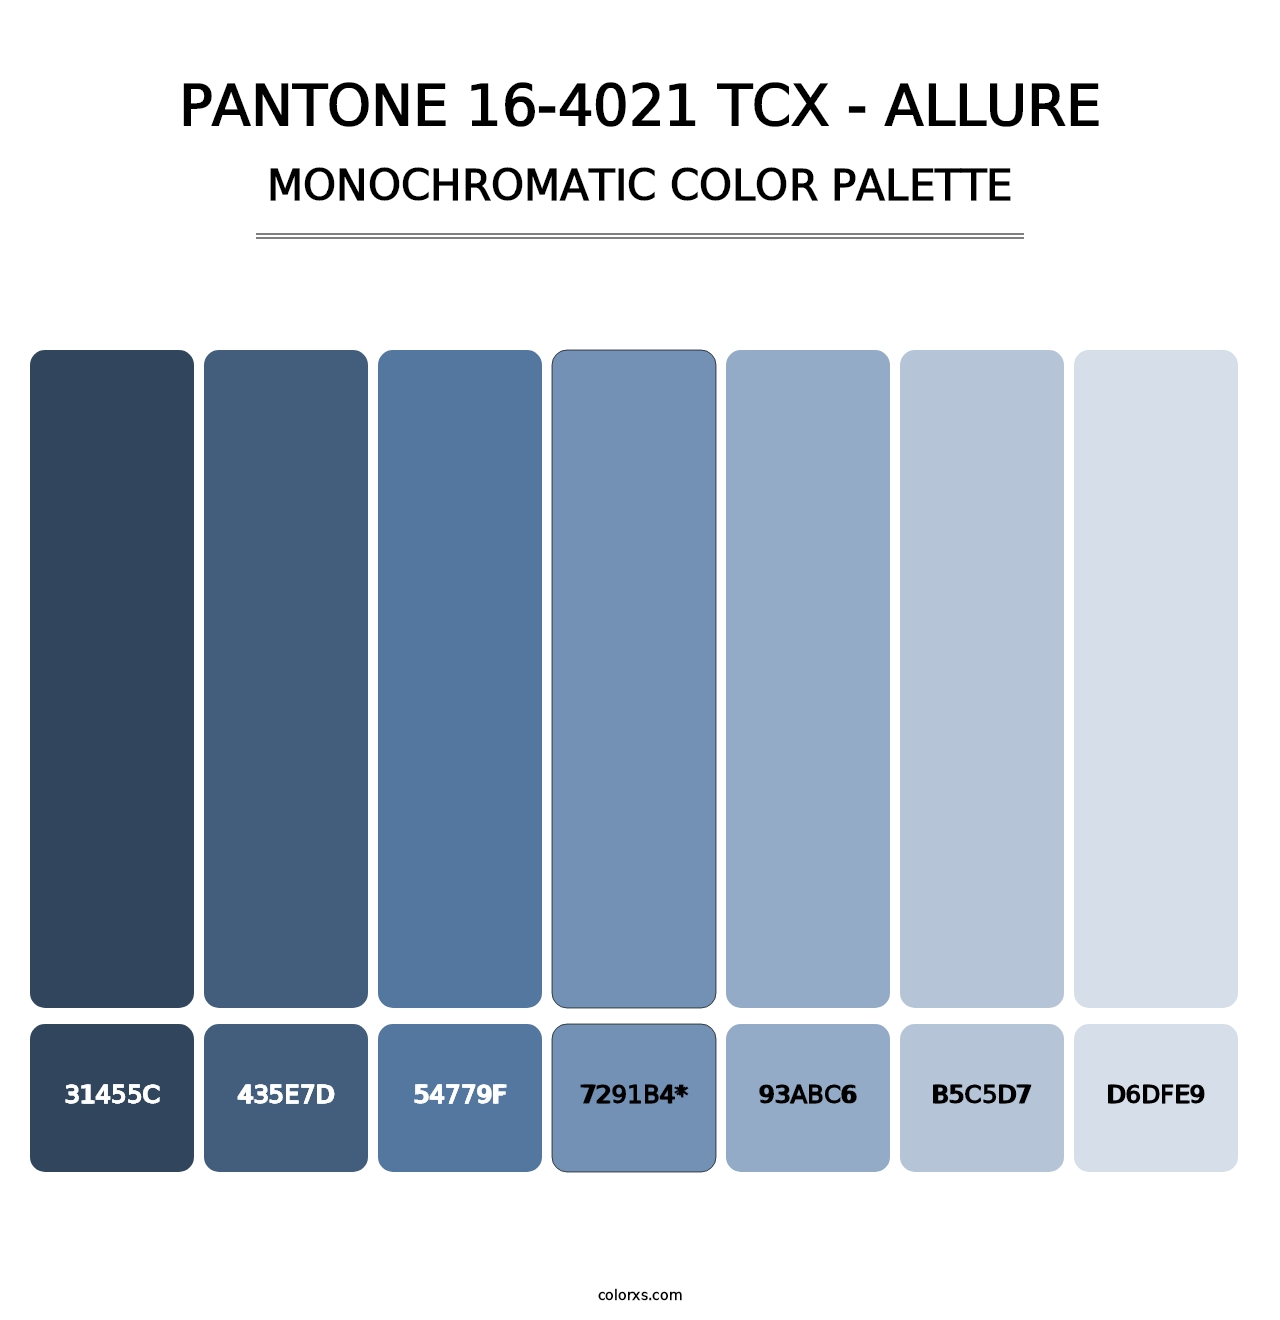 PANTONE 16-4021 TCX - Allure - Monochromatic Color Palette